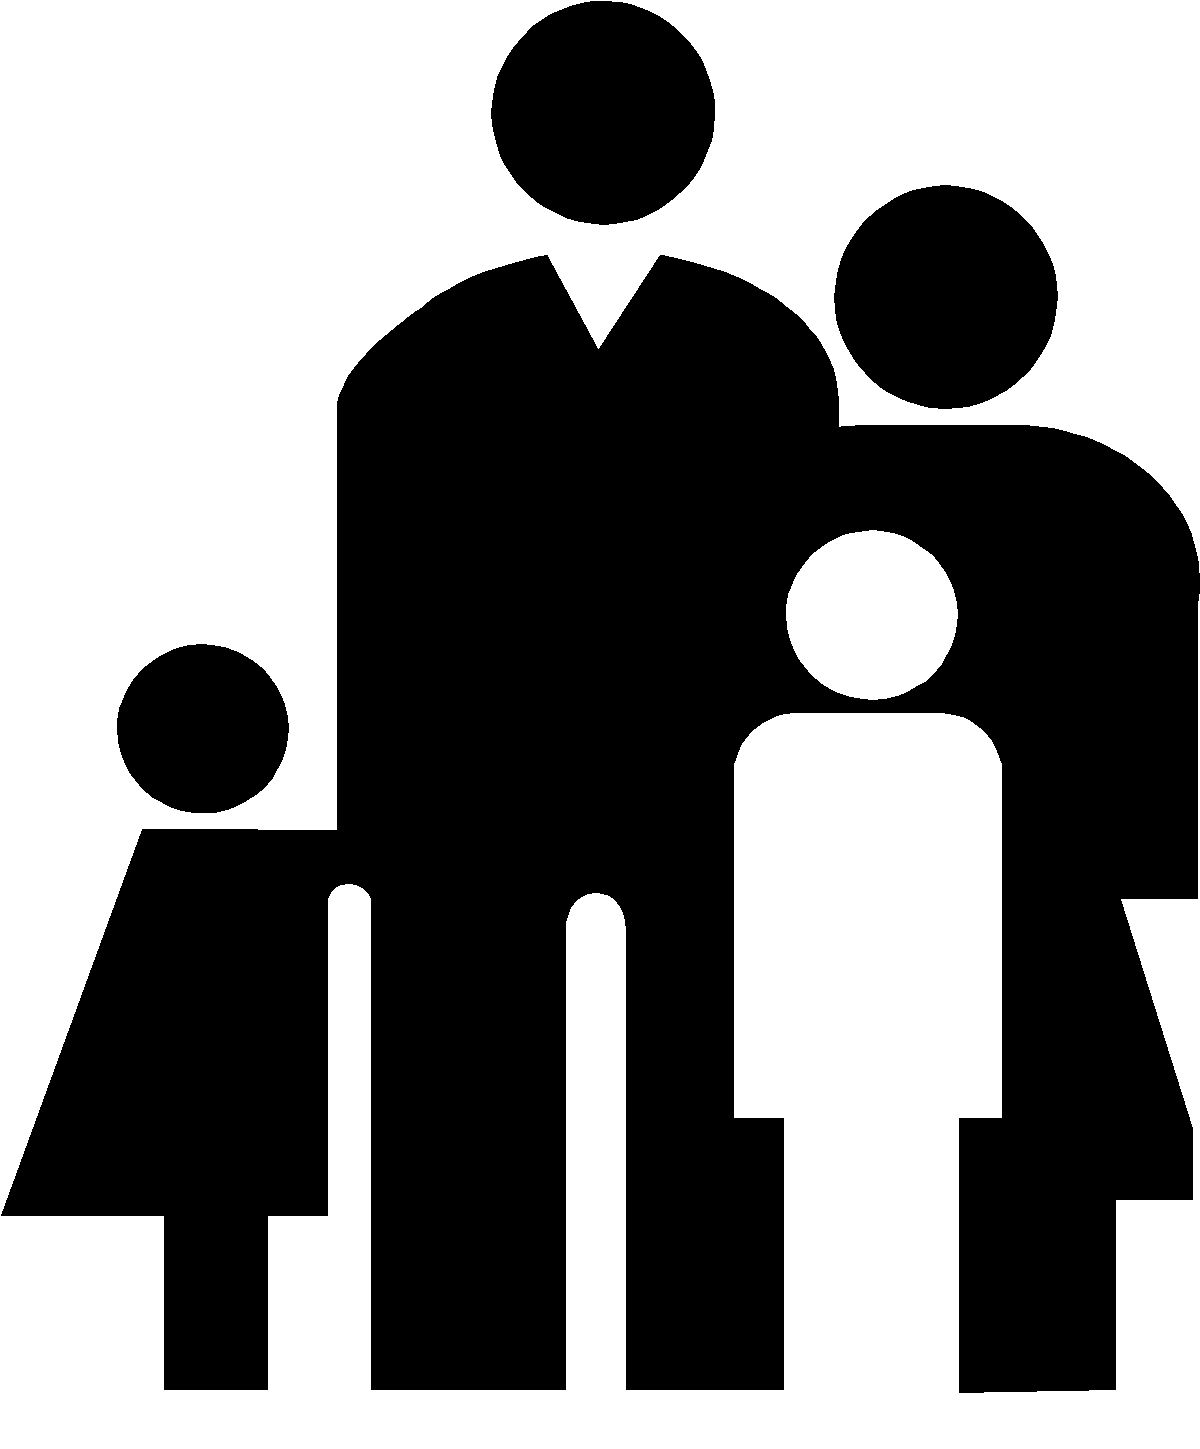 Derechos: El Derecho de familia